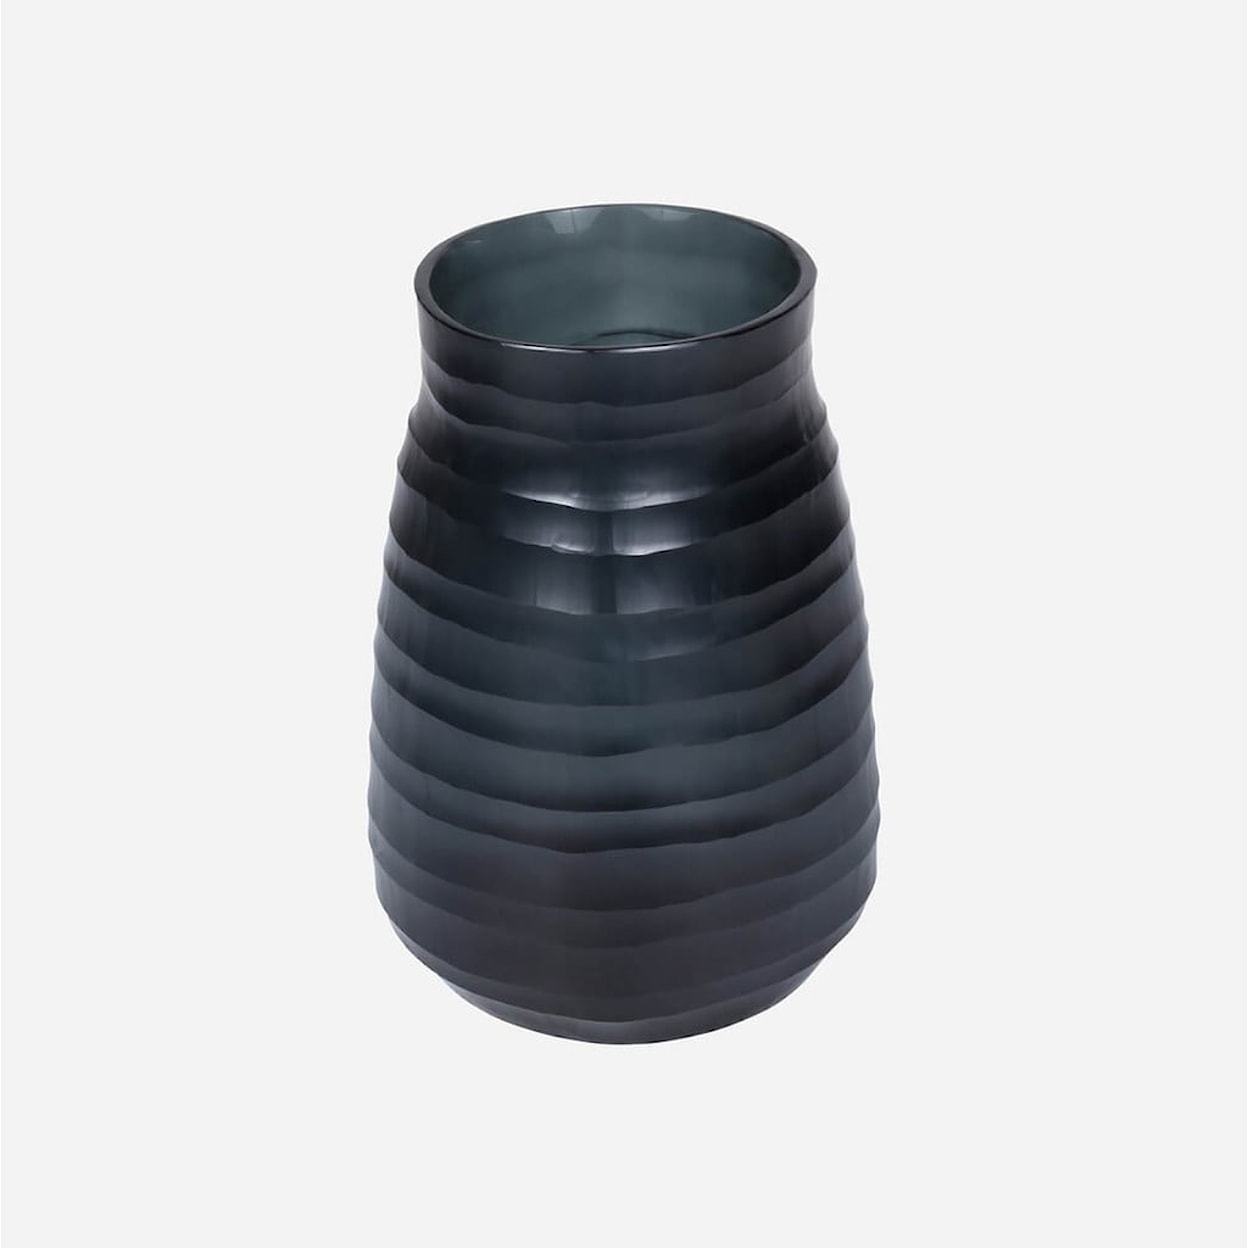 BOBO Intriguing Objects BOBO Intriguing Objects Escaut Dark Indigo Glass Vase  - Tall